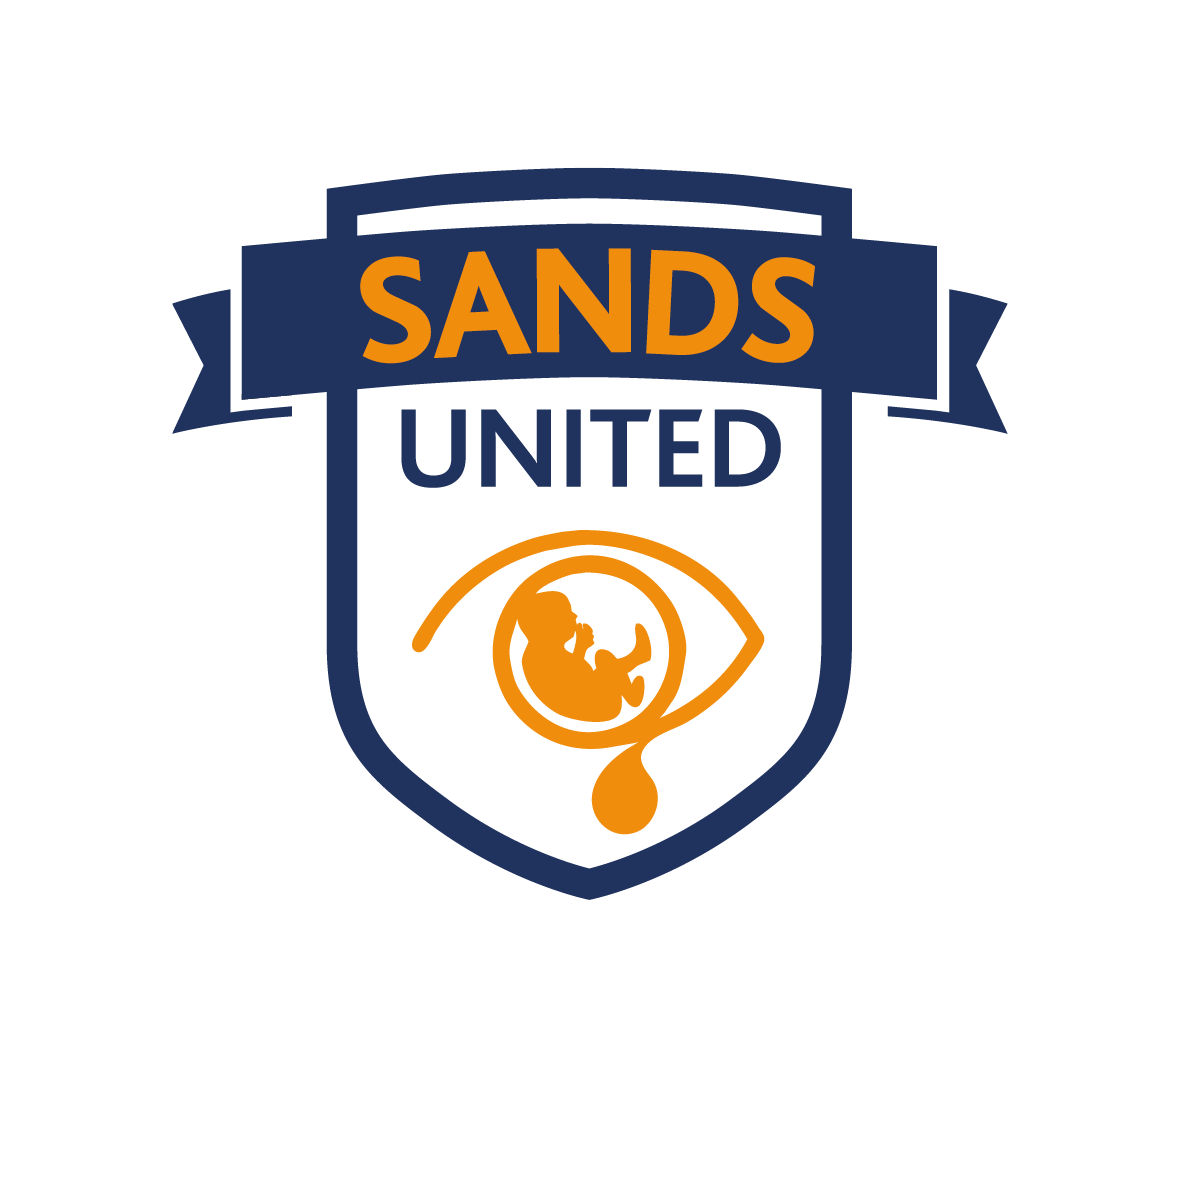 Sands United logo